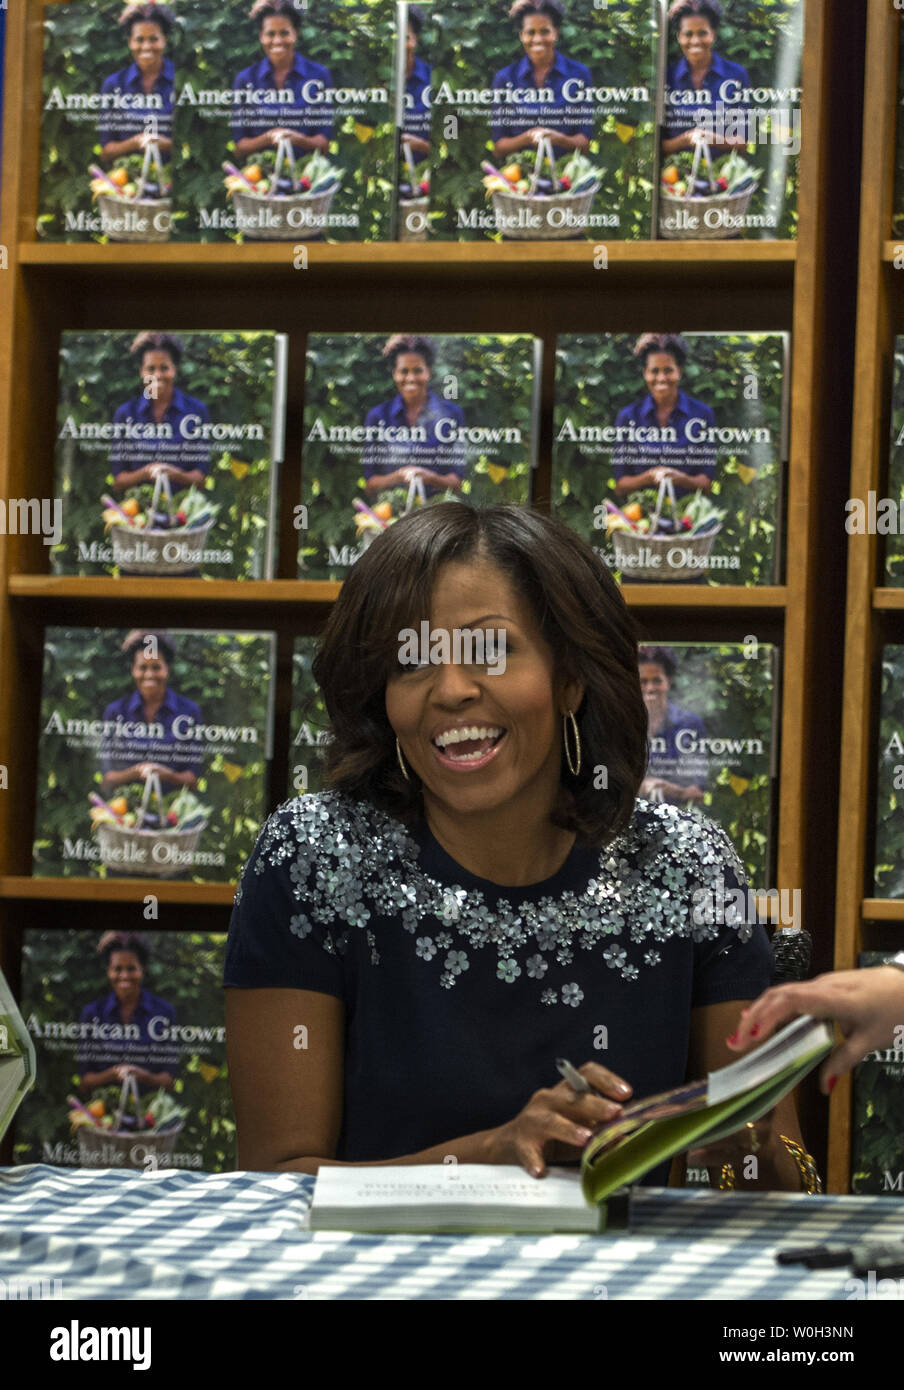 First Lady Michelle Obama spricht mit Kunden wie Sie schildern Ihre Gartenarbeit Buch 'American gewachsen" an der Politik und Prosa Buchhandlung in Washington, DC am 7. Mai 2013. Ihr Buch erzählt die Geschichte des Weißen Hauses Garten ist Michelle's erstes Buch. Alle Erlöse aus dem Verkauf von Büchern wird in den Nationalpark Stiftung gehen. UPI/Pat Benic Stockfoto